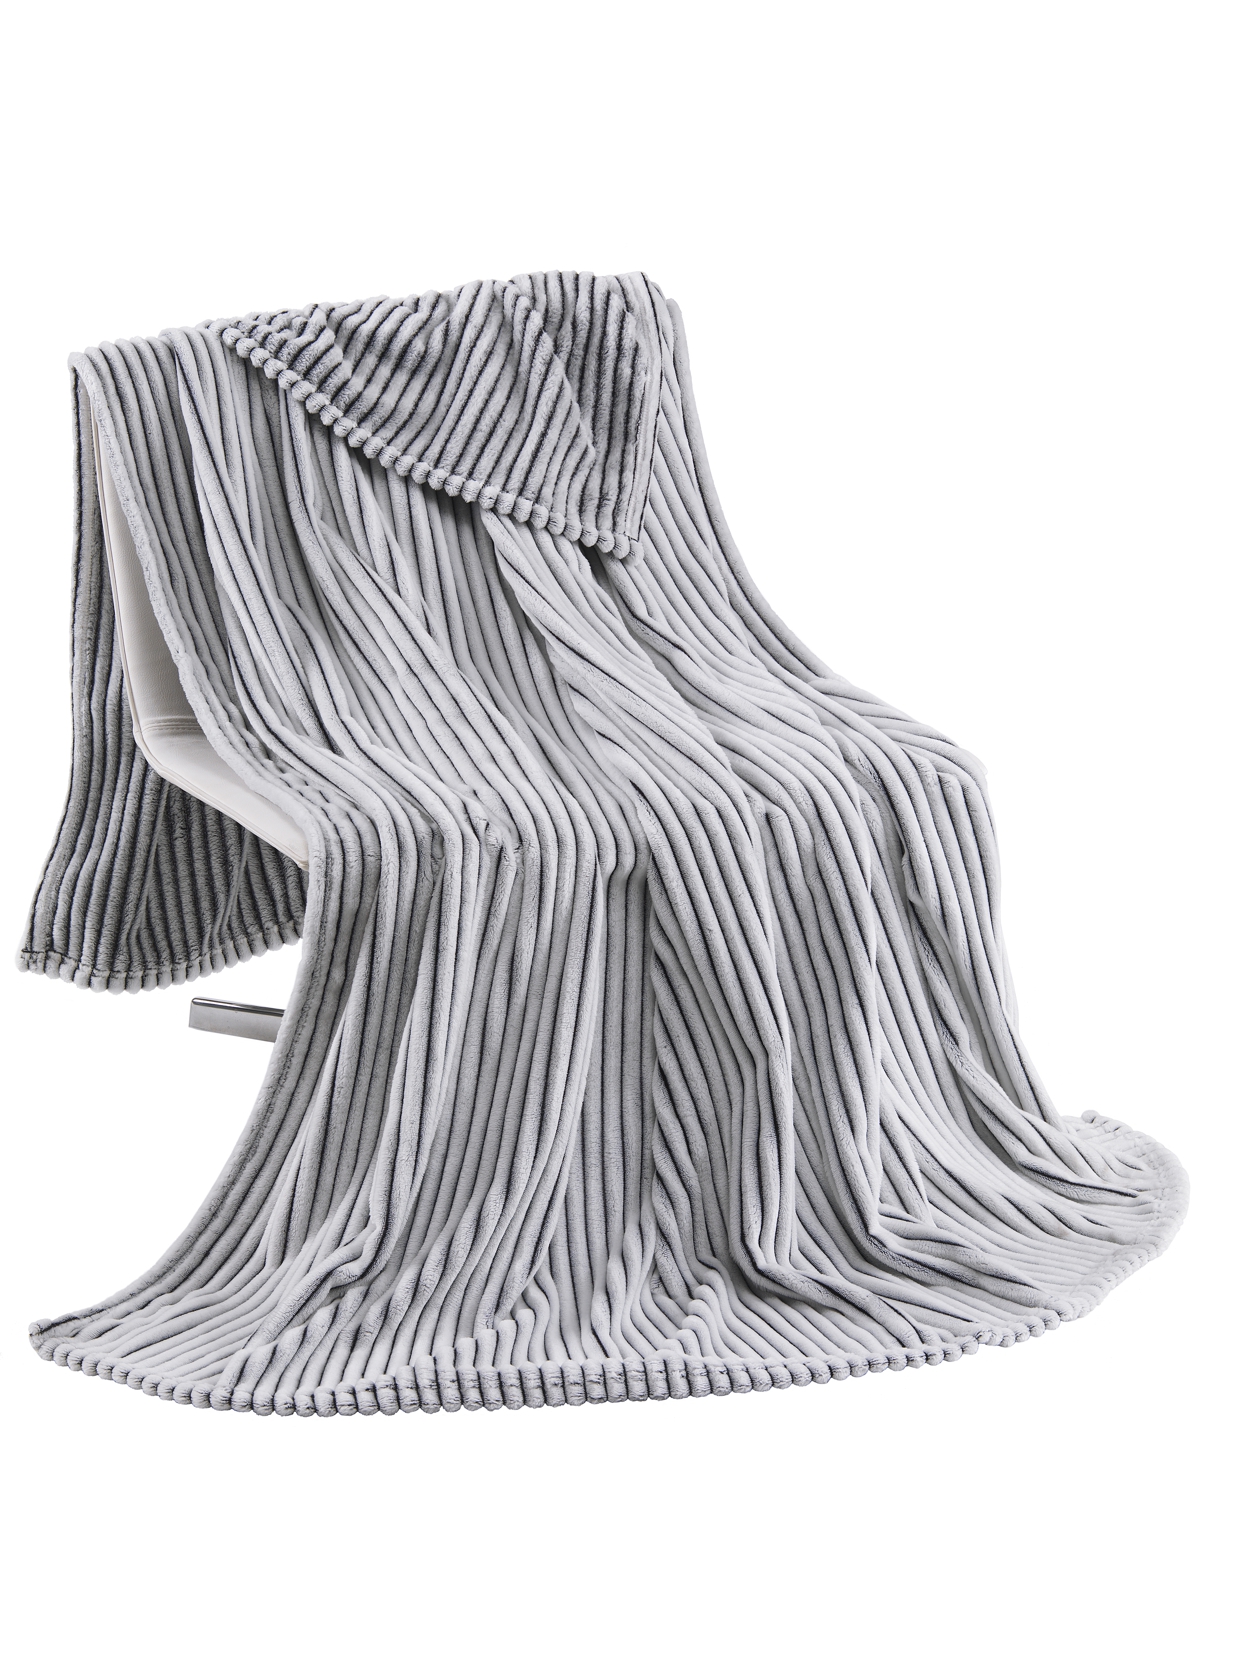 Kuscheldecke flauschig warme Decke in Cord Optik 150x200 cm in